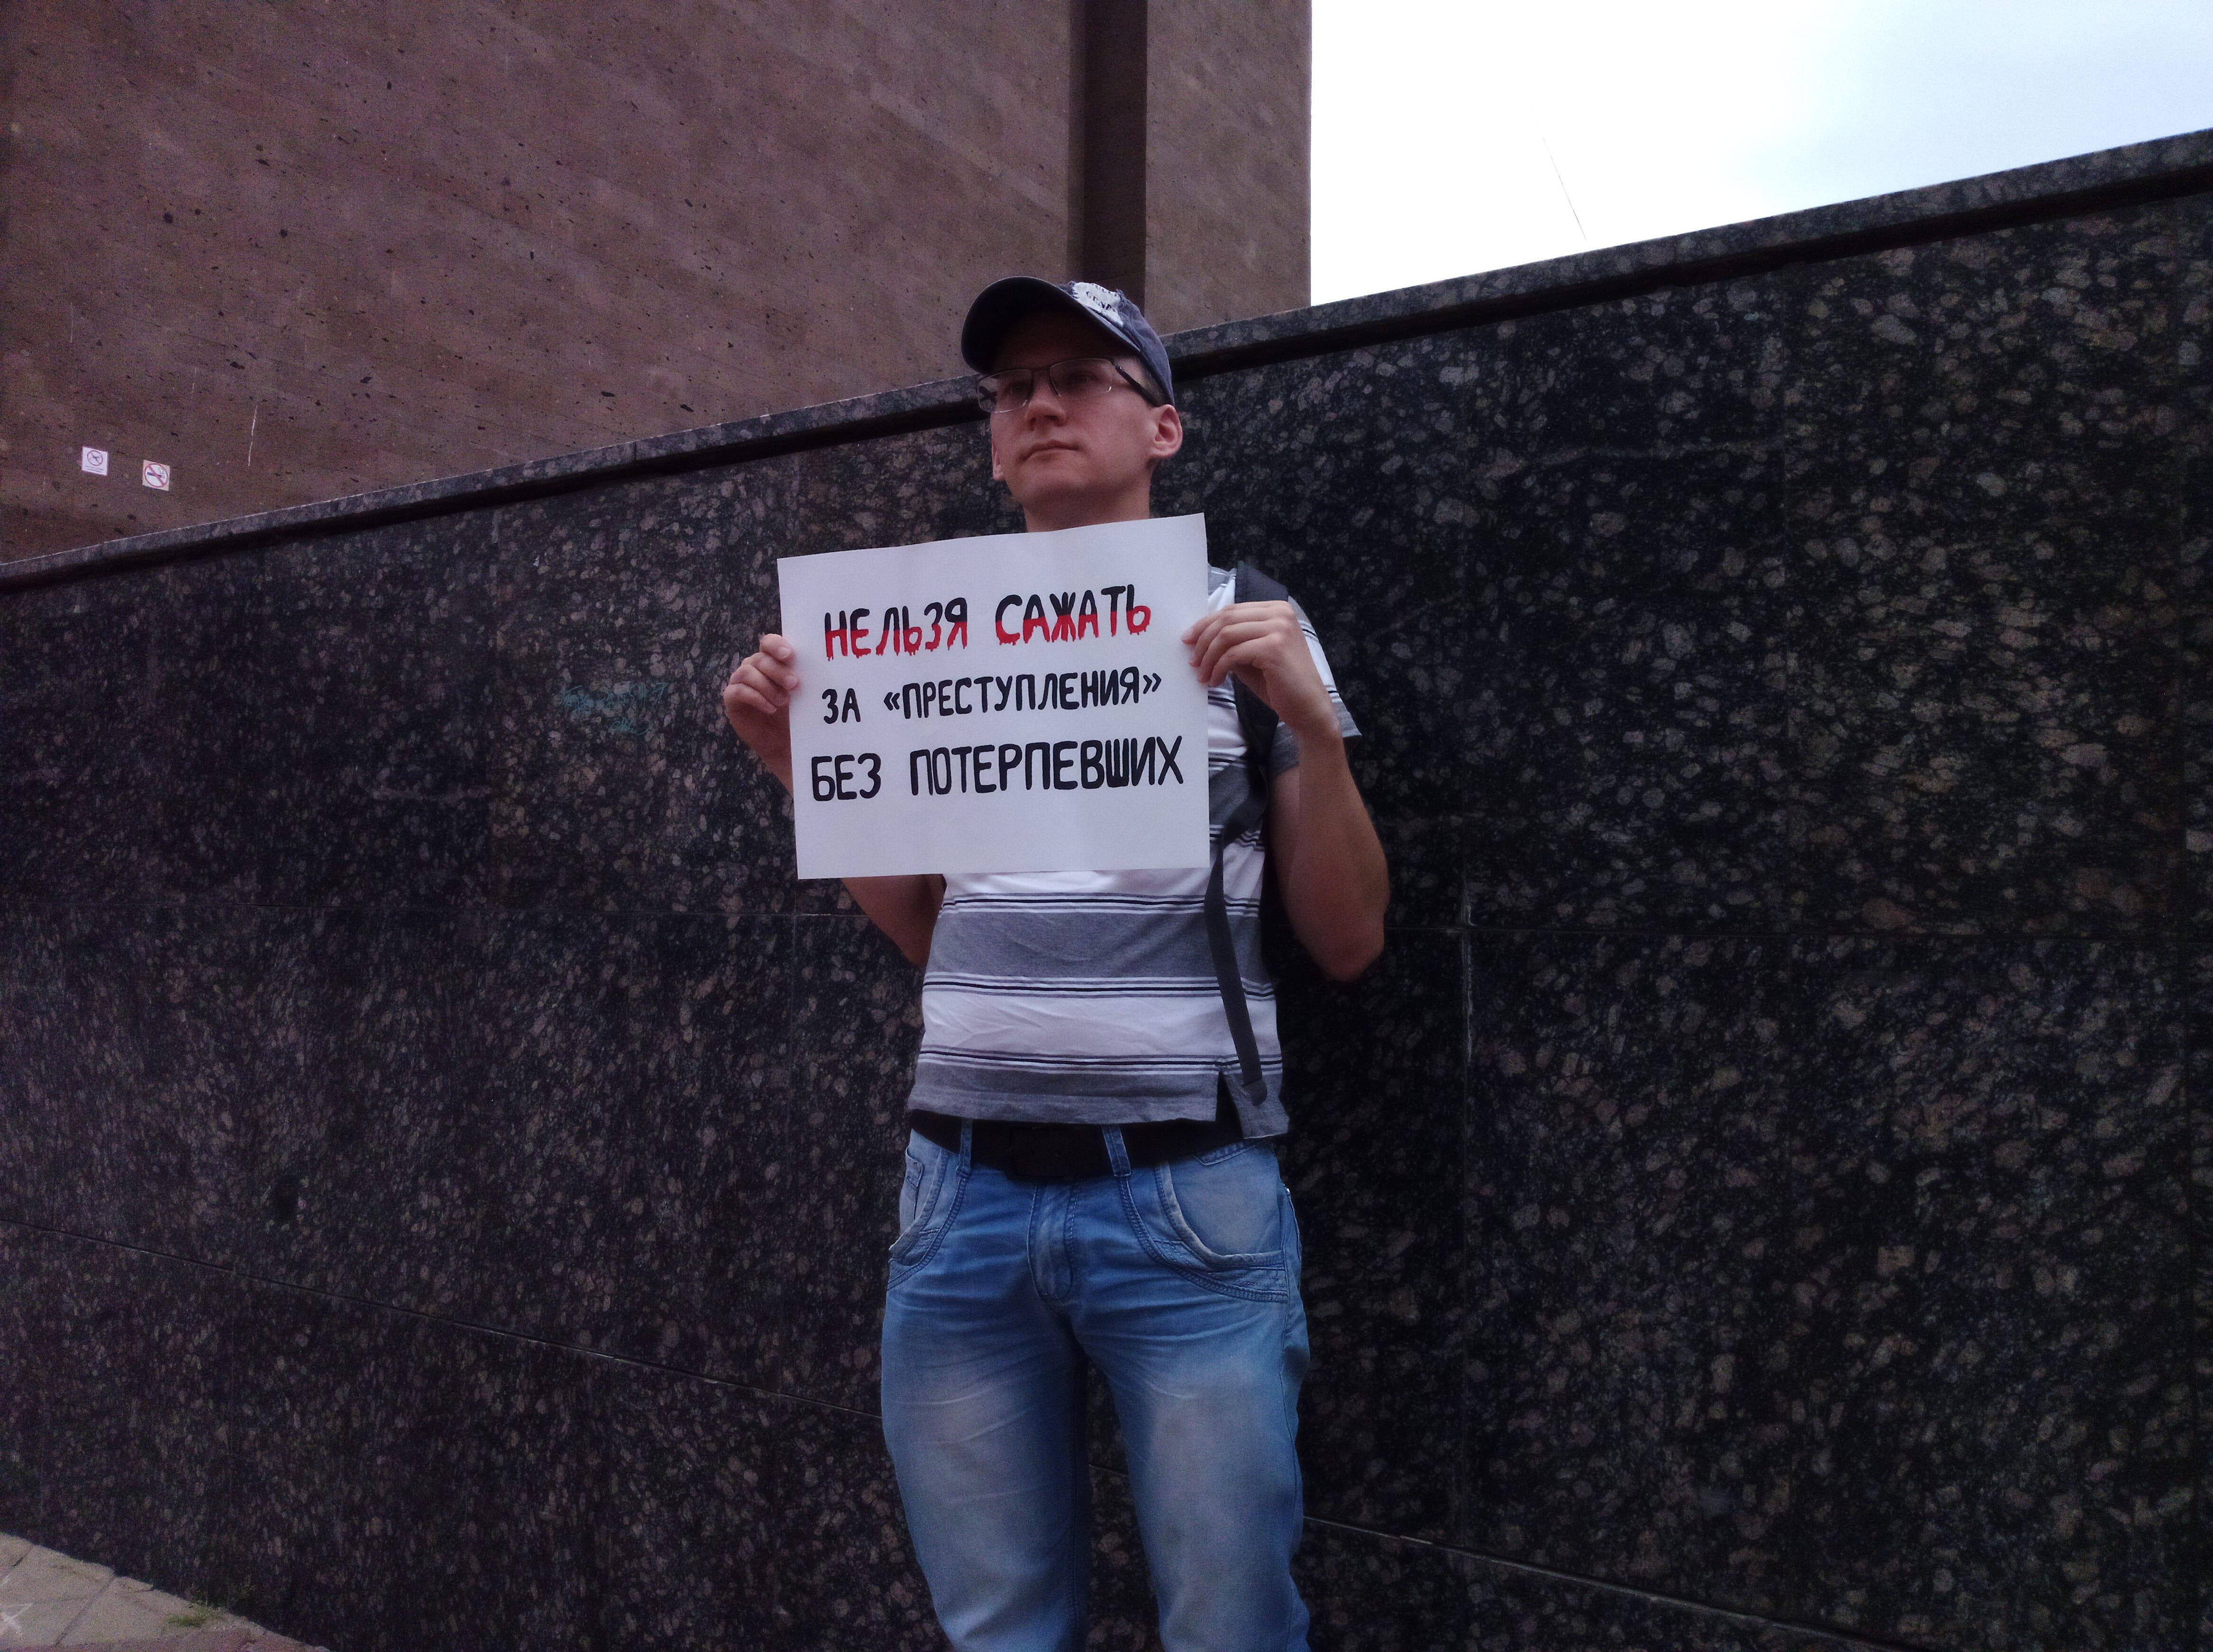 Участник ростовского пикета с самодельным плакатом. Фото Константина Волгина для "Кавказского узла"